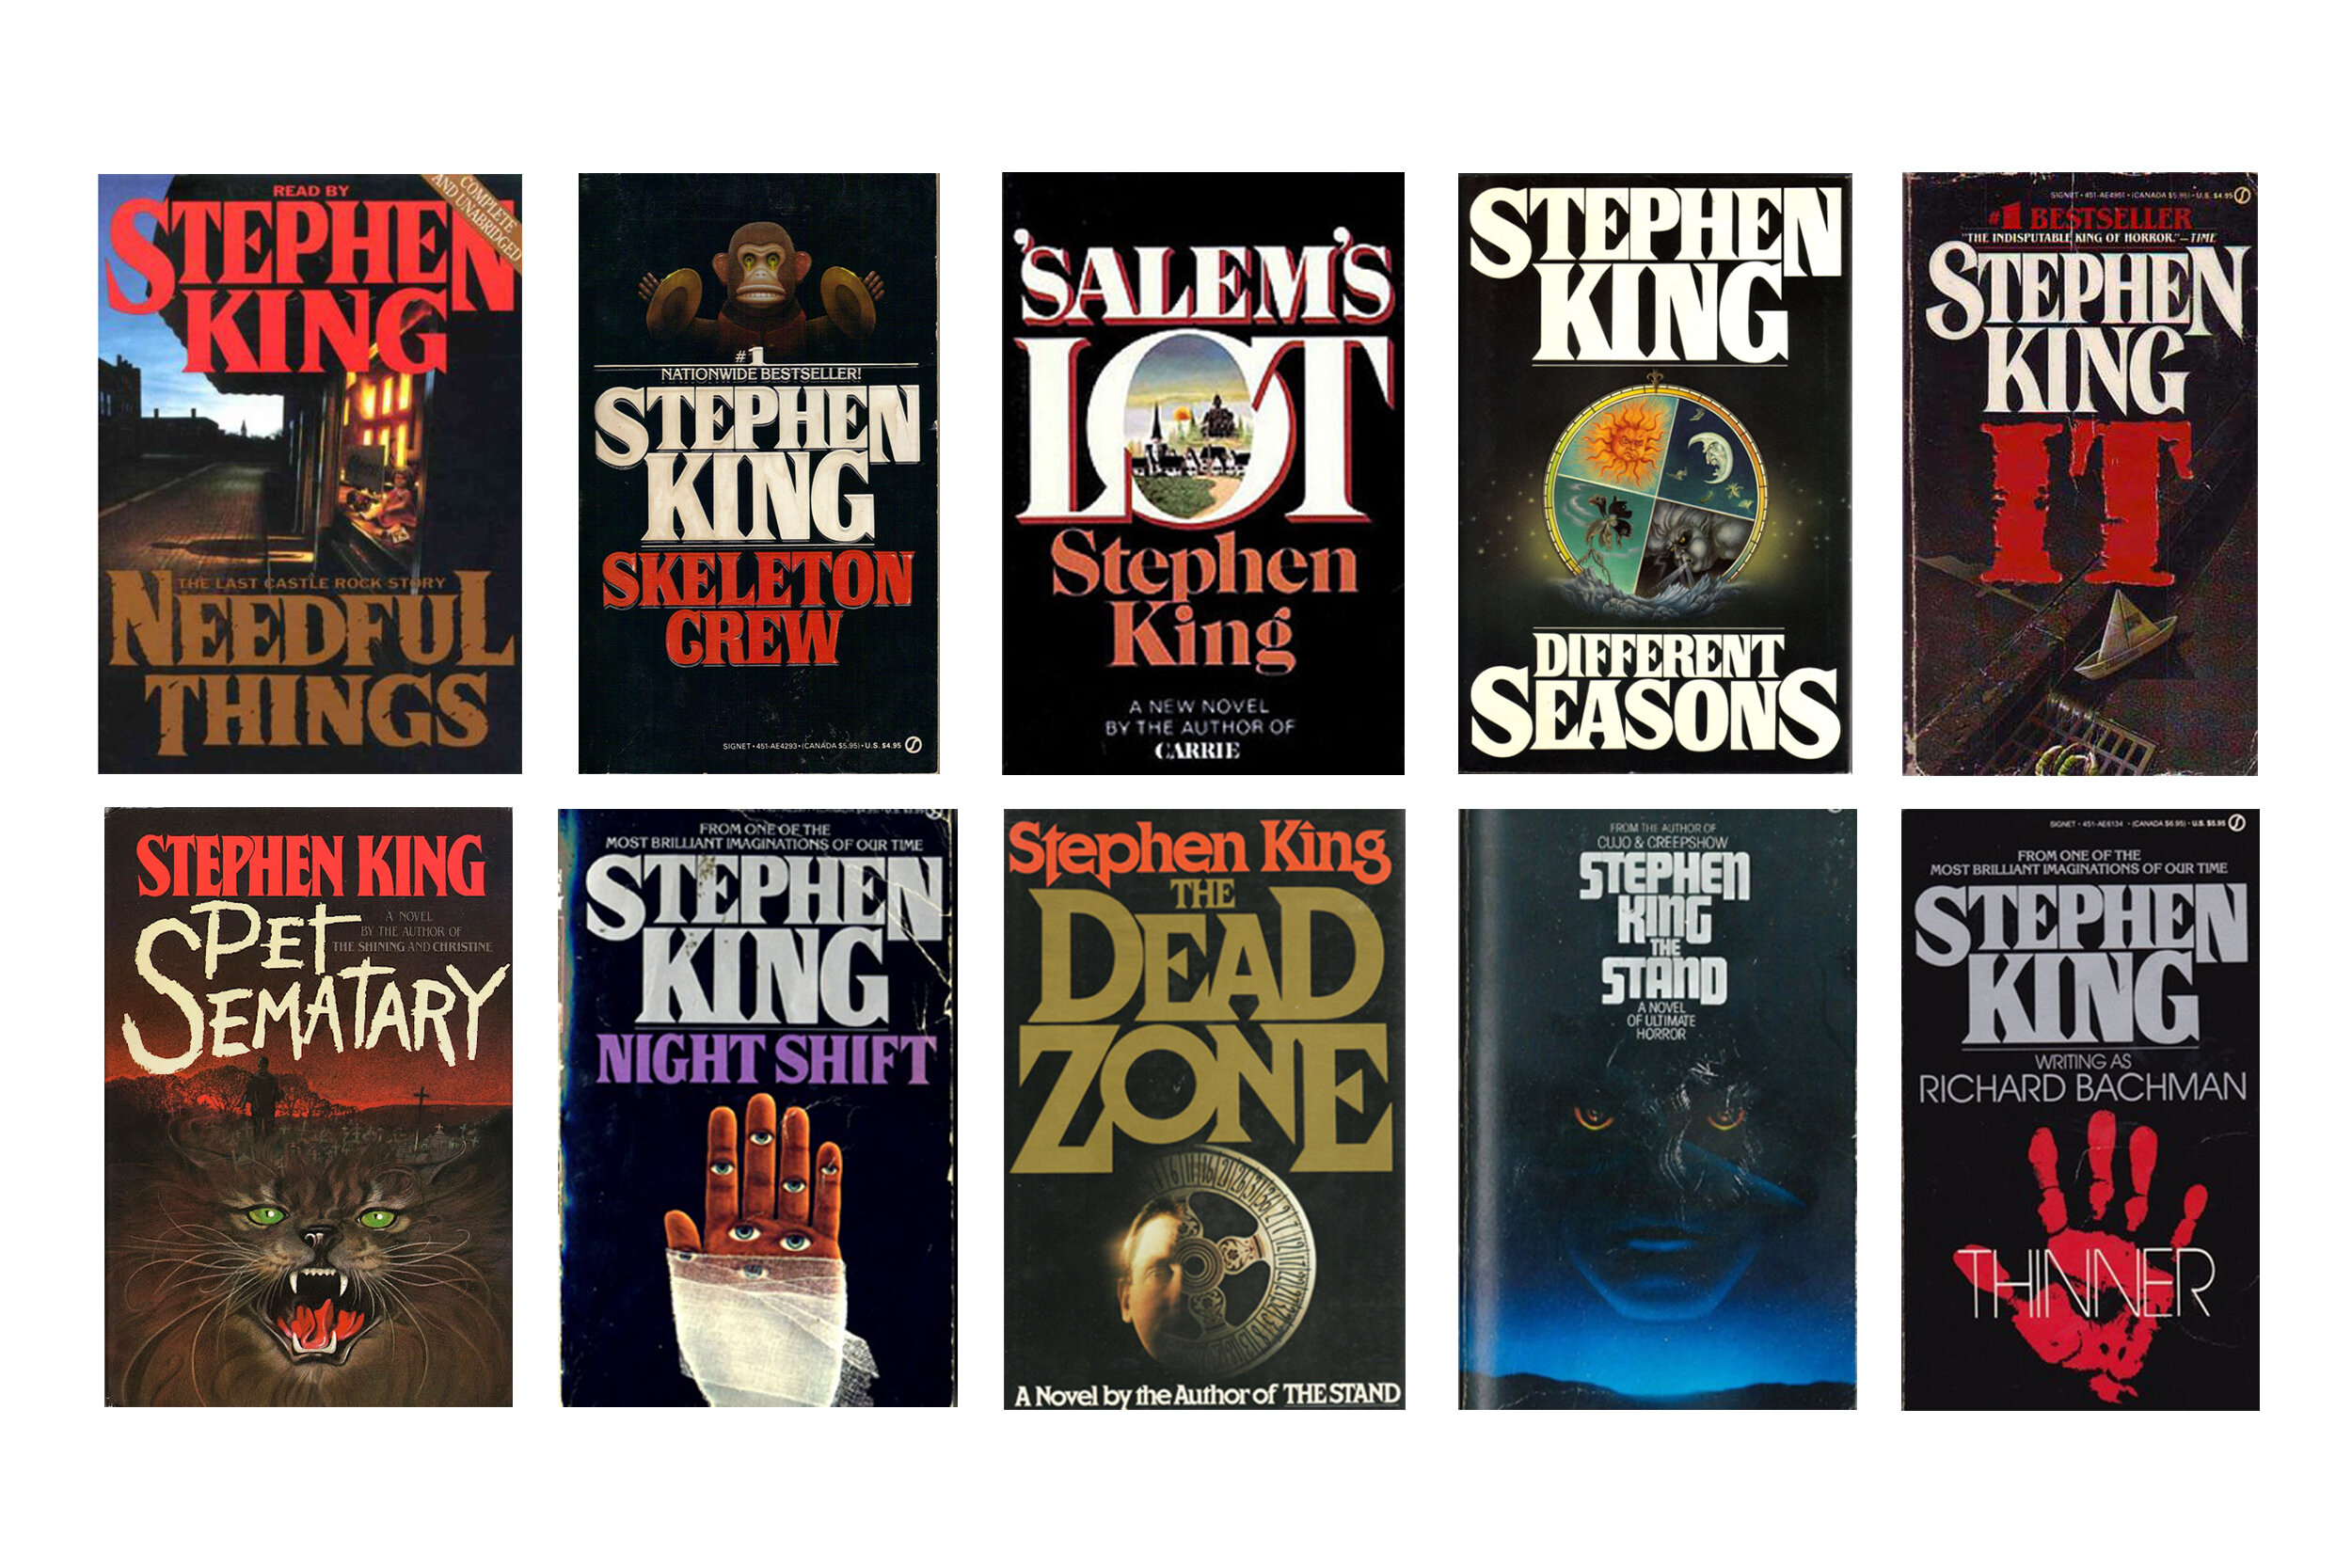 Лучшие произведения кинга. Всеикниги Стивена Кинга. Американские старые обложки книг Стивена Кинга.